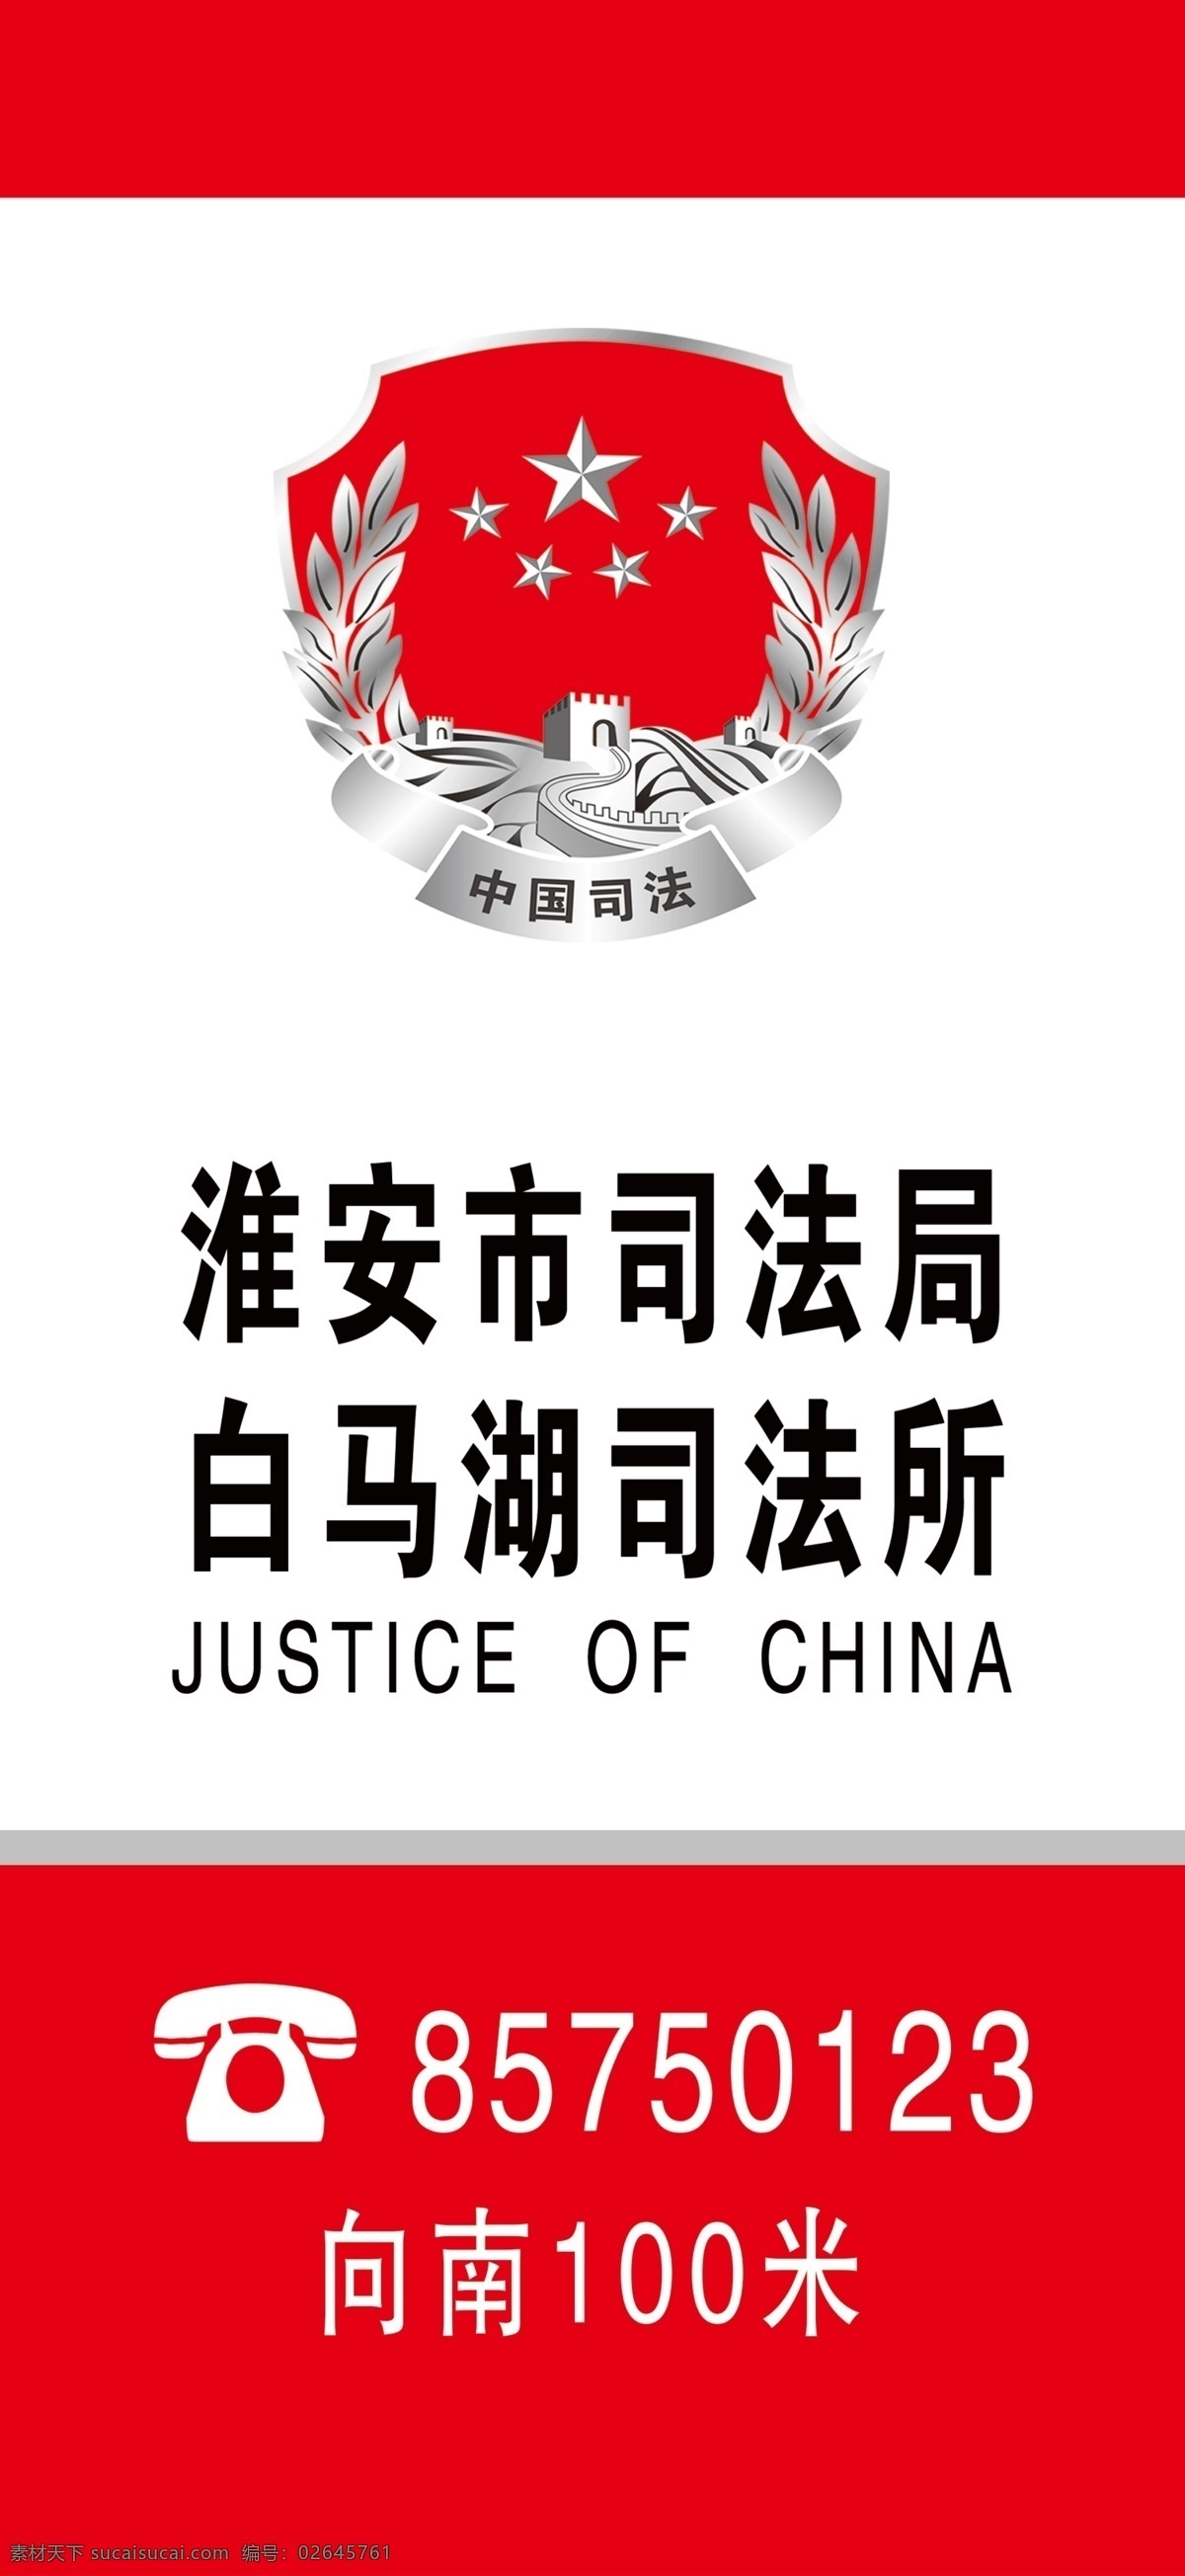 司法所指示牌 法司局指示牌 指示牌 司法局 司法所 中国司法 生活百科 办公用品